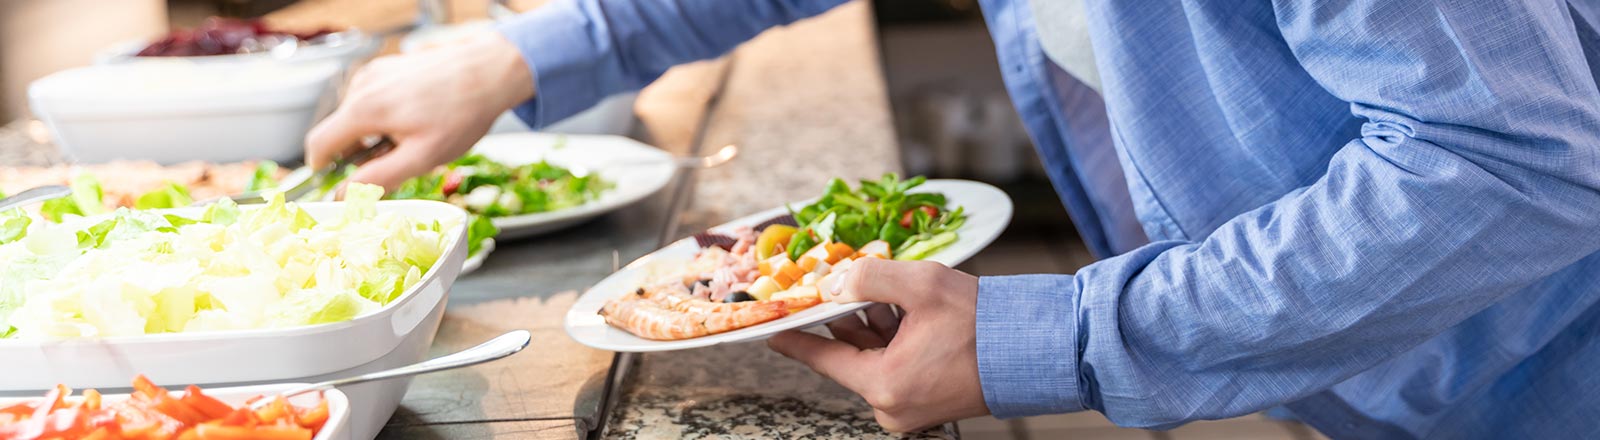 Platzieren Sie gesunde Menüs richtig für gesündere Essensweisen ihrer Gäste